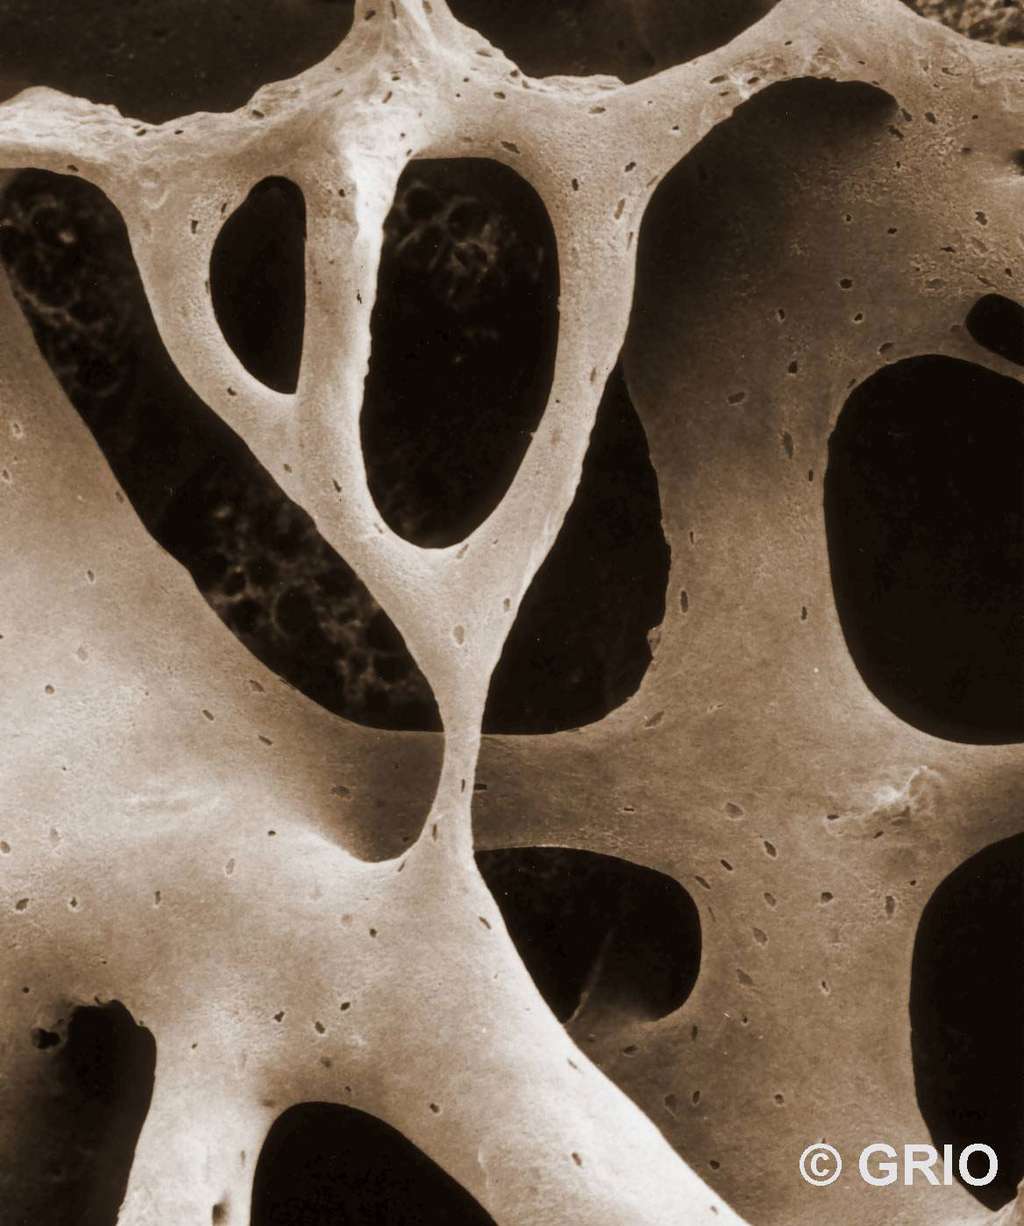 Trame osseuse (microscopie électronique à balayage). © Groupe de recherche et d’information sur les ostéoporoses, reproduction autorisée par le GRIO, EDP Sciences, tous droits réservés